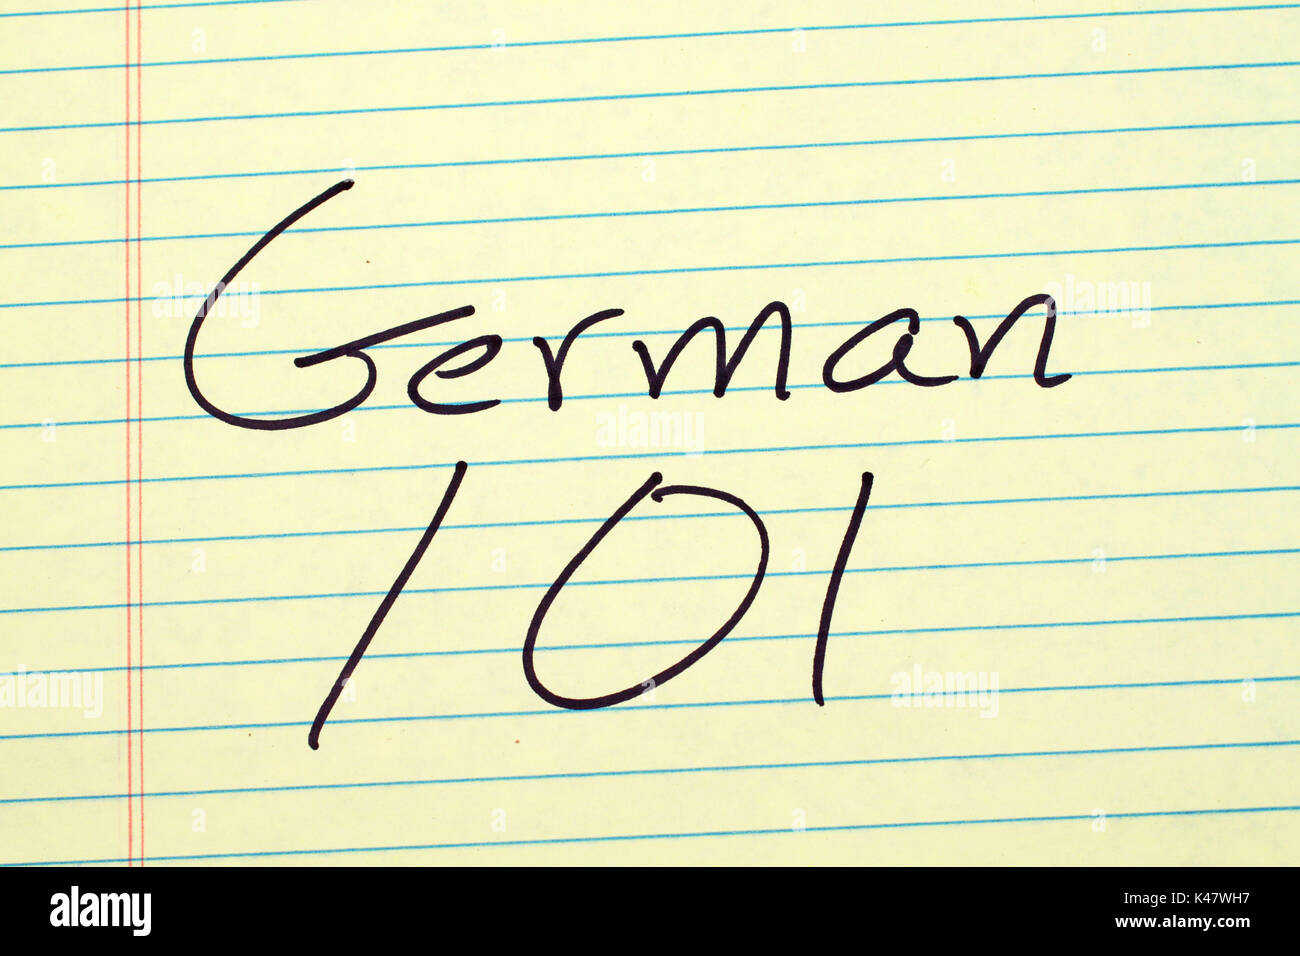 Deutsch die Worte '101' auf einem gelben Legal Pad Stockfotografie - Alamy